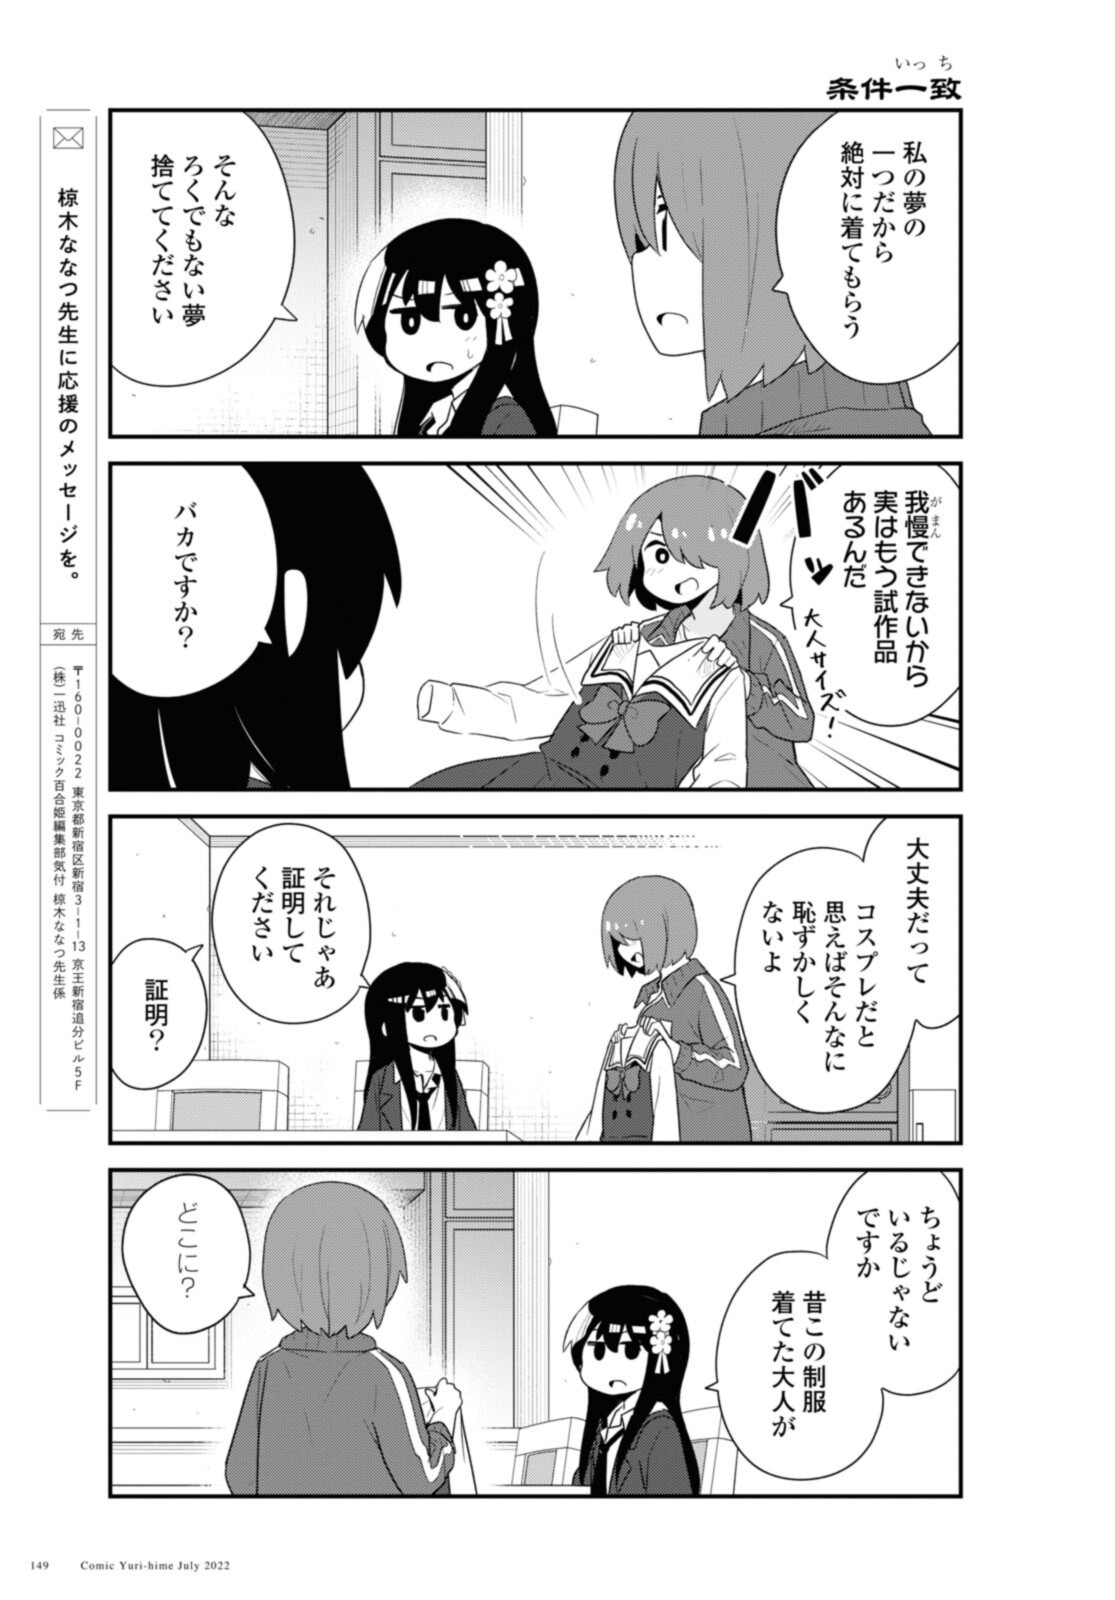 Watashi ni Tenshi ga Maiorita! - Chapter 97 - Page 15